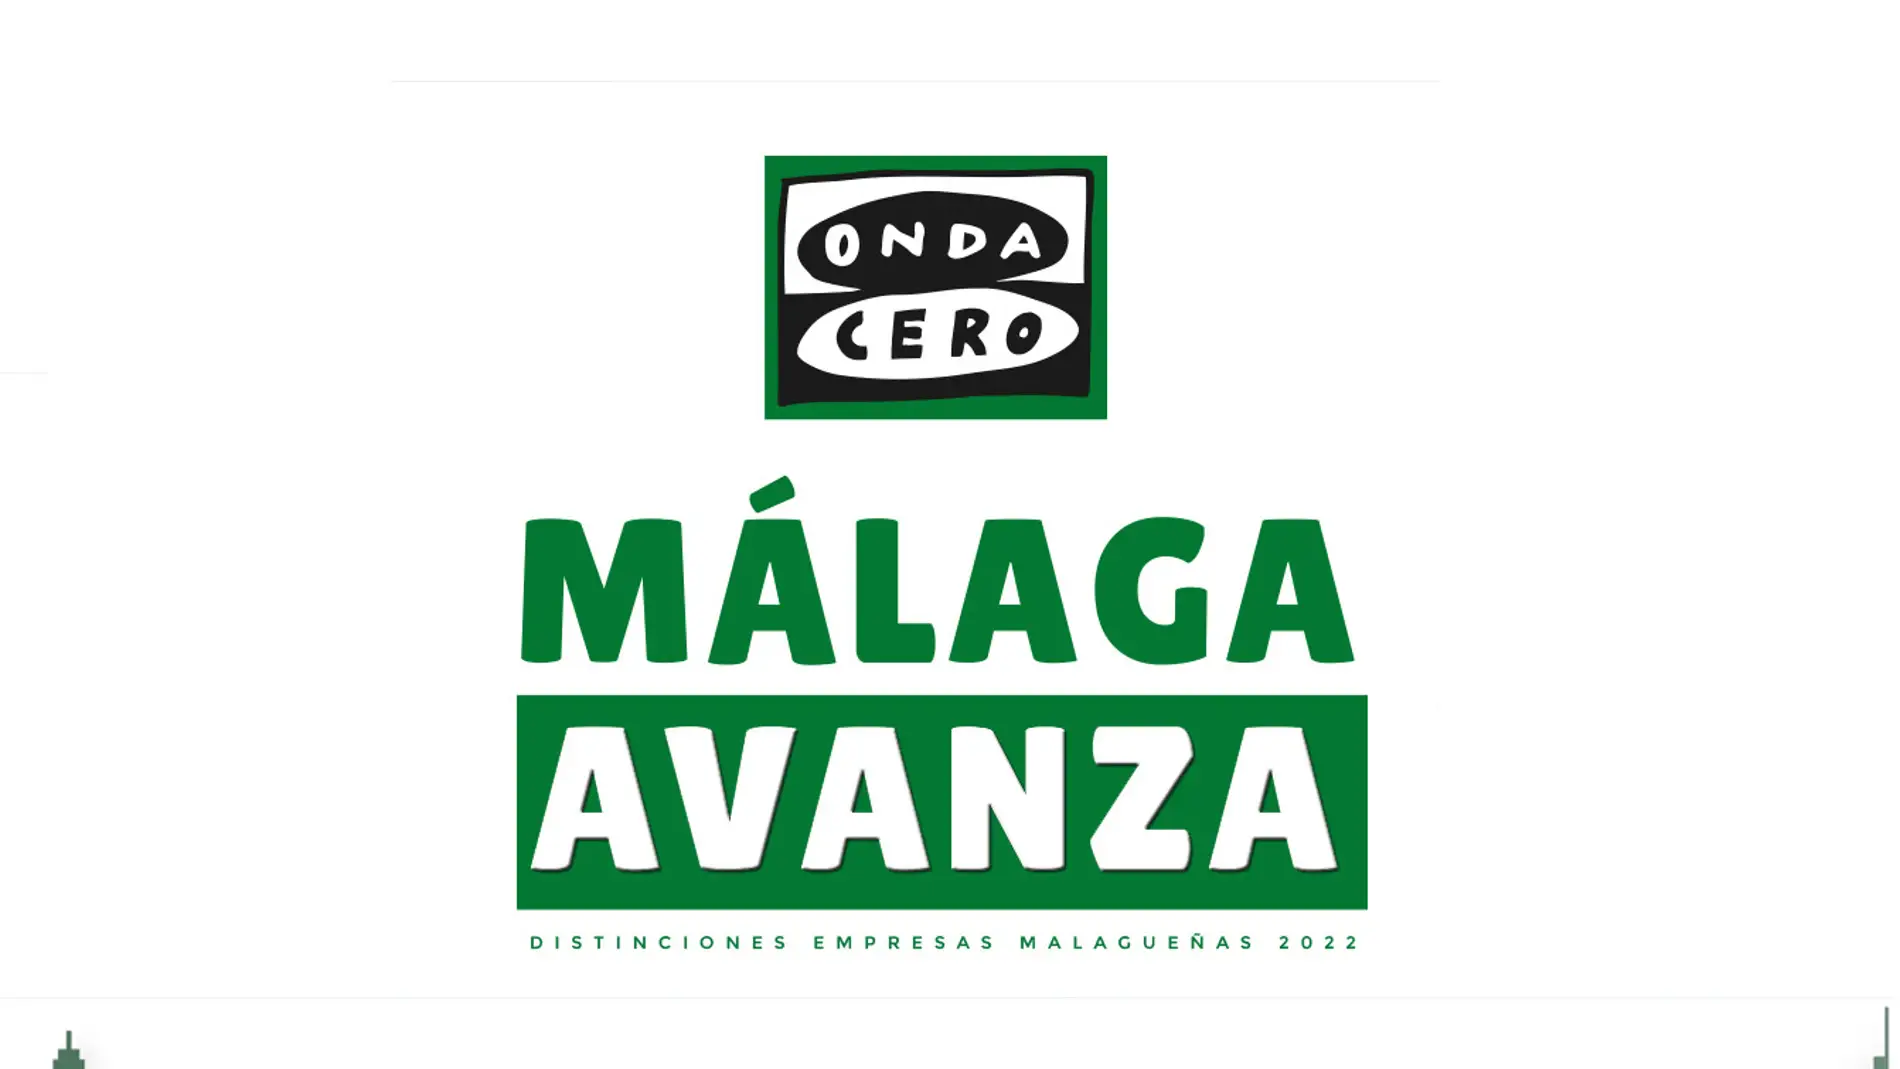 Málaga Avanza: Onda Cero rinde homenaje a las empresas malagueñas